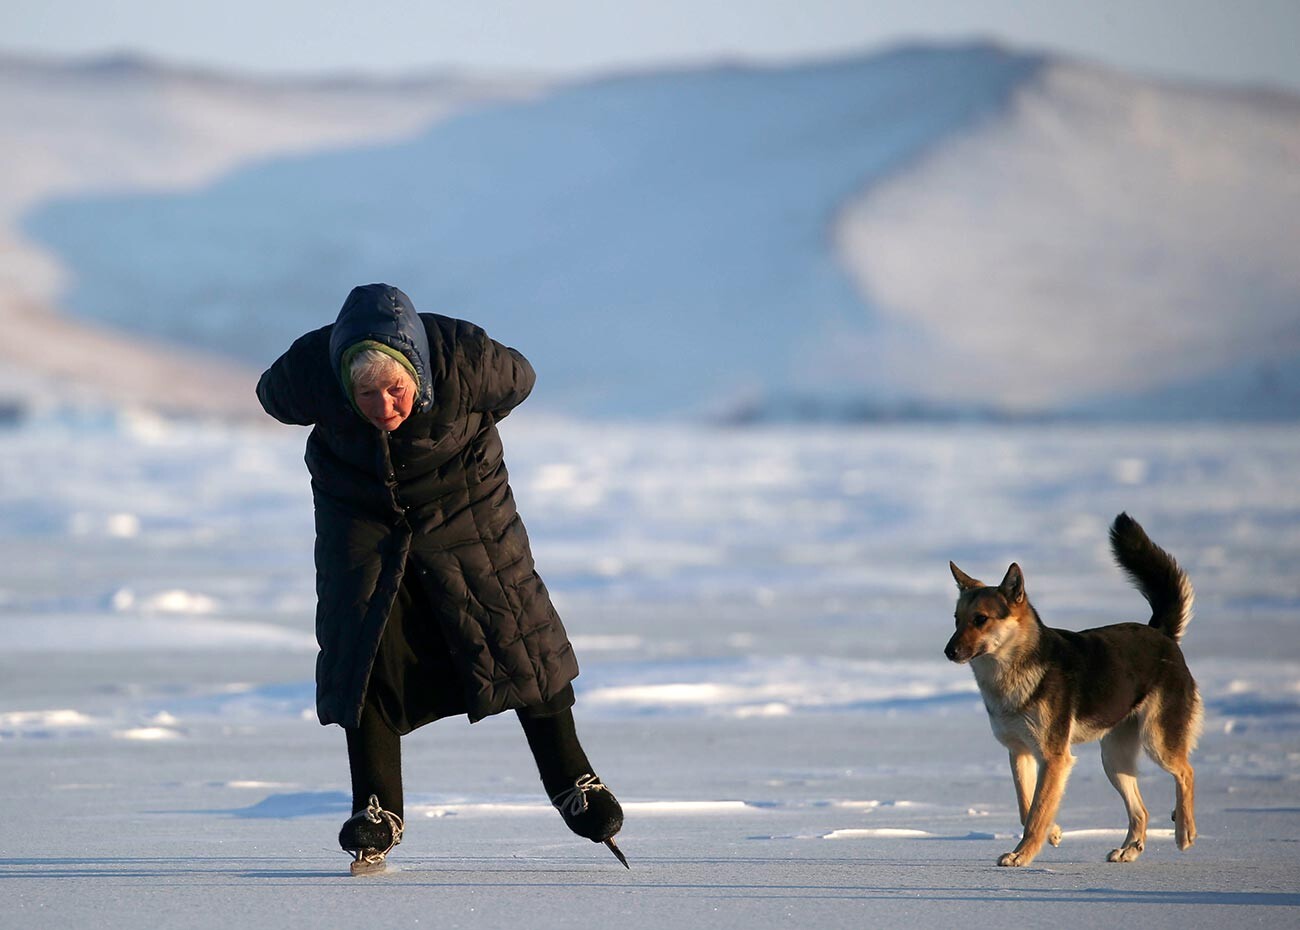 Любовь Мореходова катается на коньках по озеру Байкал. Первые коньки из заточенных лезвий пилы для нее смастерил отец. Сейчас женщина использует беговые 